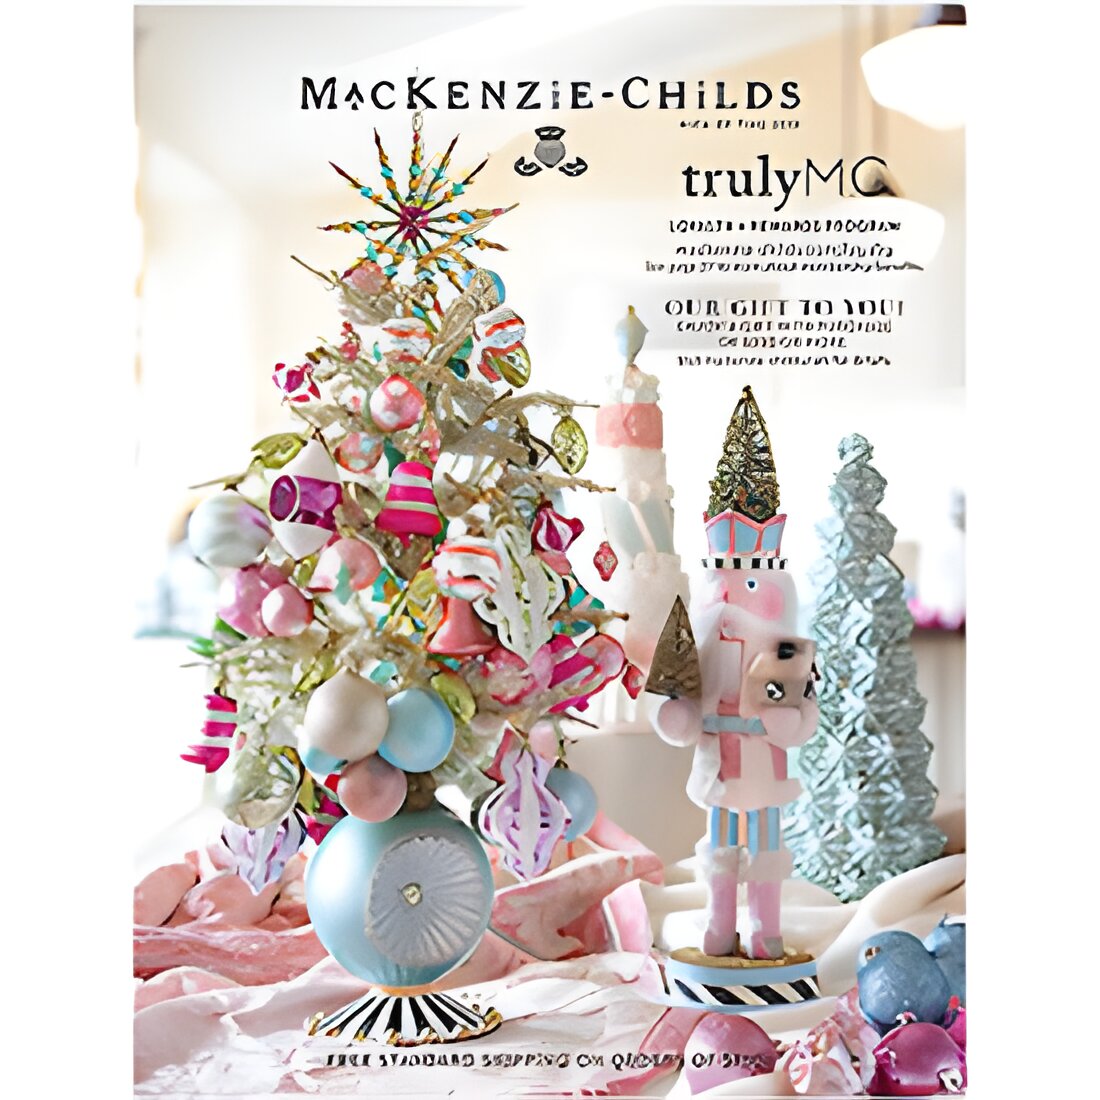 Free Mackenzie-Childs Catalog